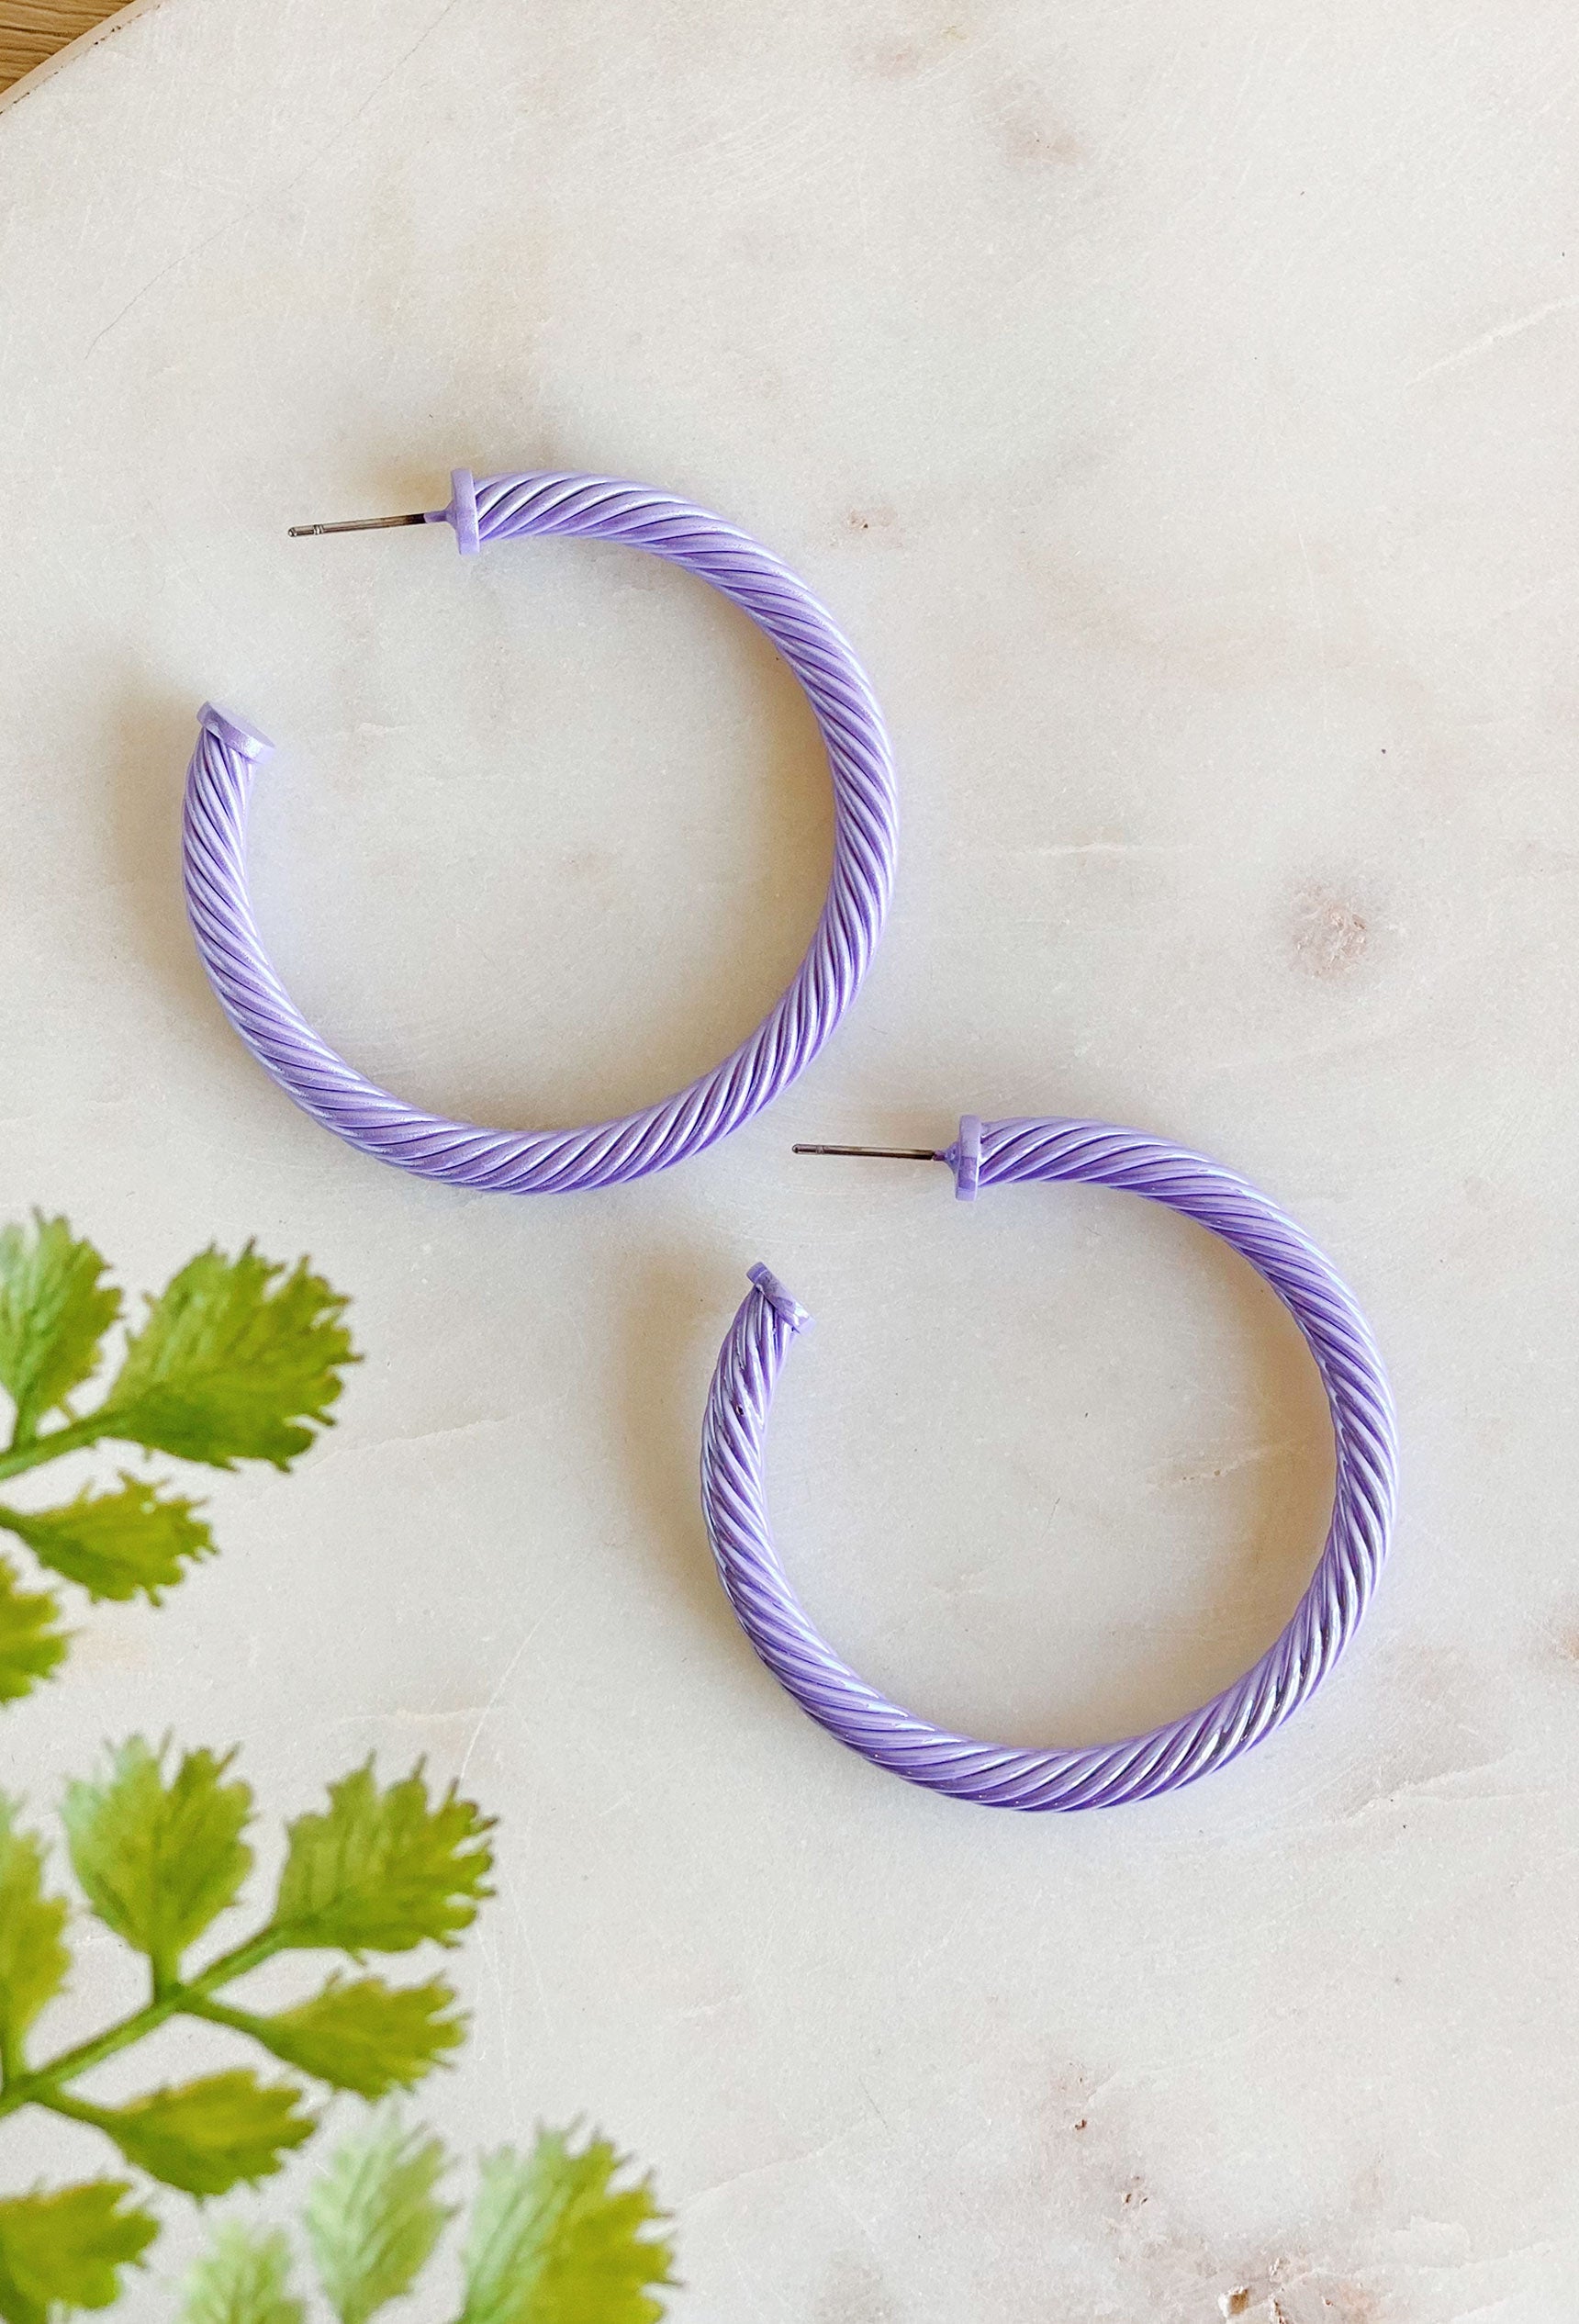 Remi Cable Hoop Earrings in Lavender, cable twist hoop earrings